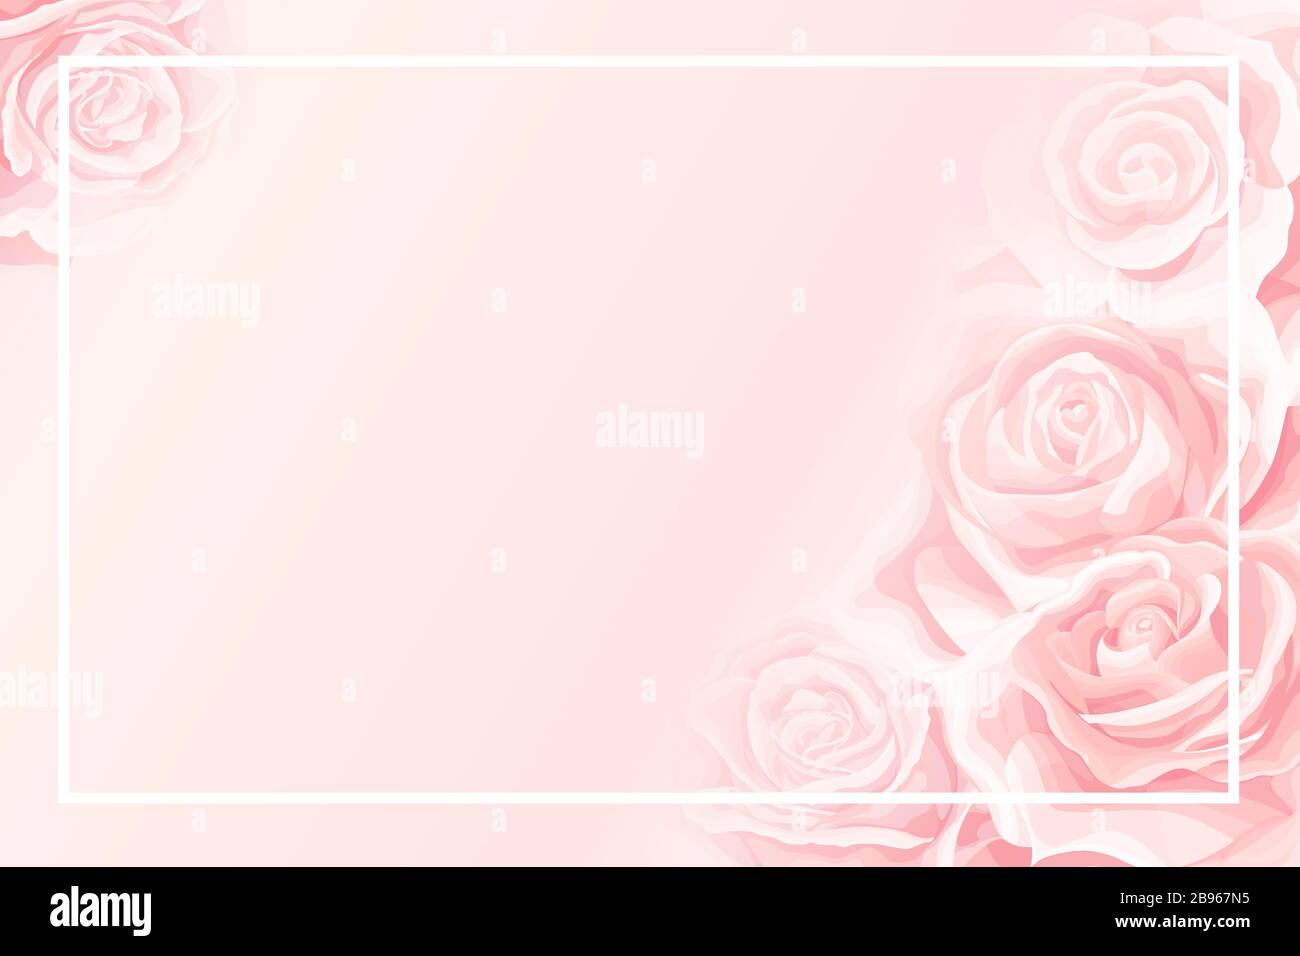 Với khung trống với nền màu hồng nhạt hoa hồng kem xinh đẹp, bạn sẽ có nhiều tùy chọn thú vị để trang trí cho lời mời của mình. Hãy để những bông hoa tươi đẹp trên nền pastel hồng mang đến cho bạn không gian nữ tính và đặc biệt.